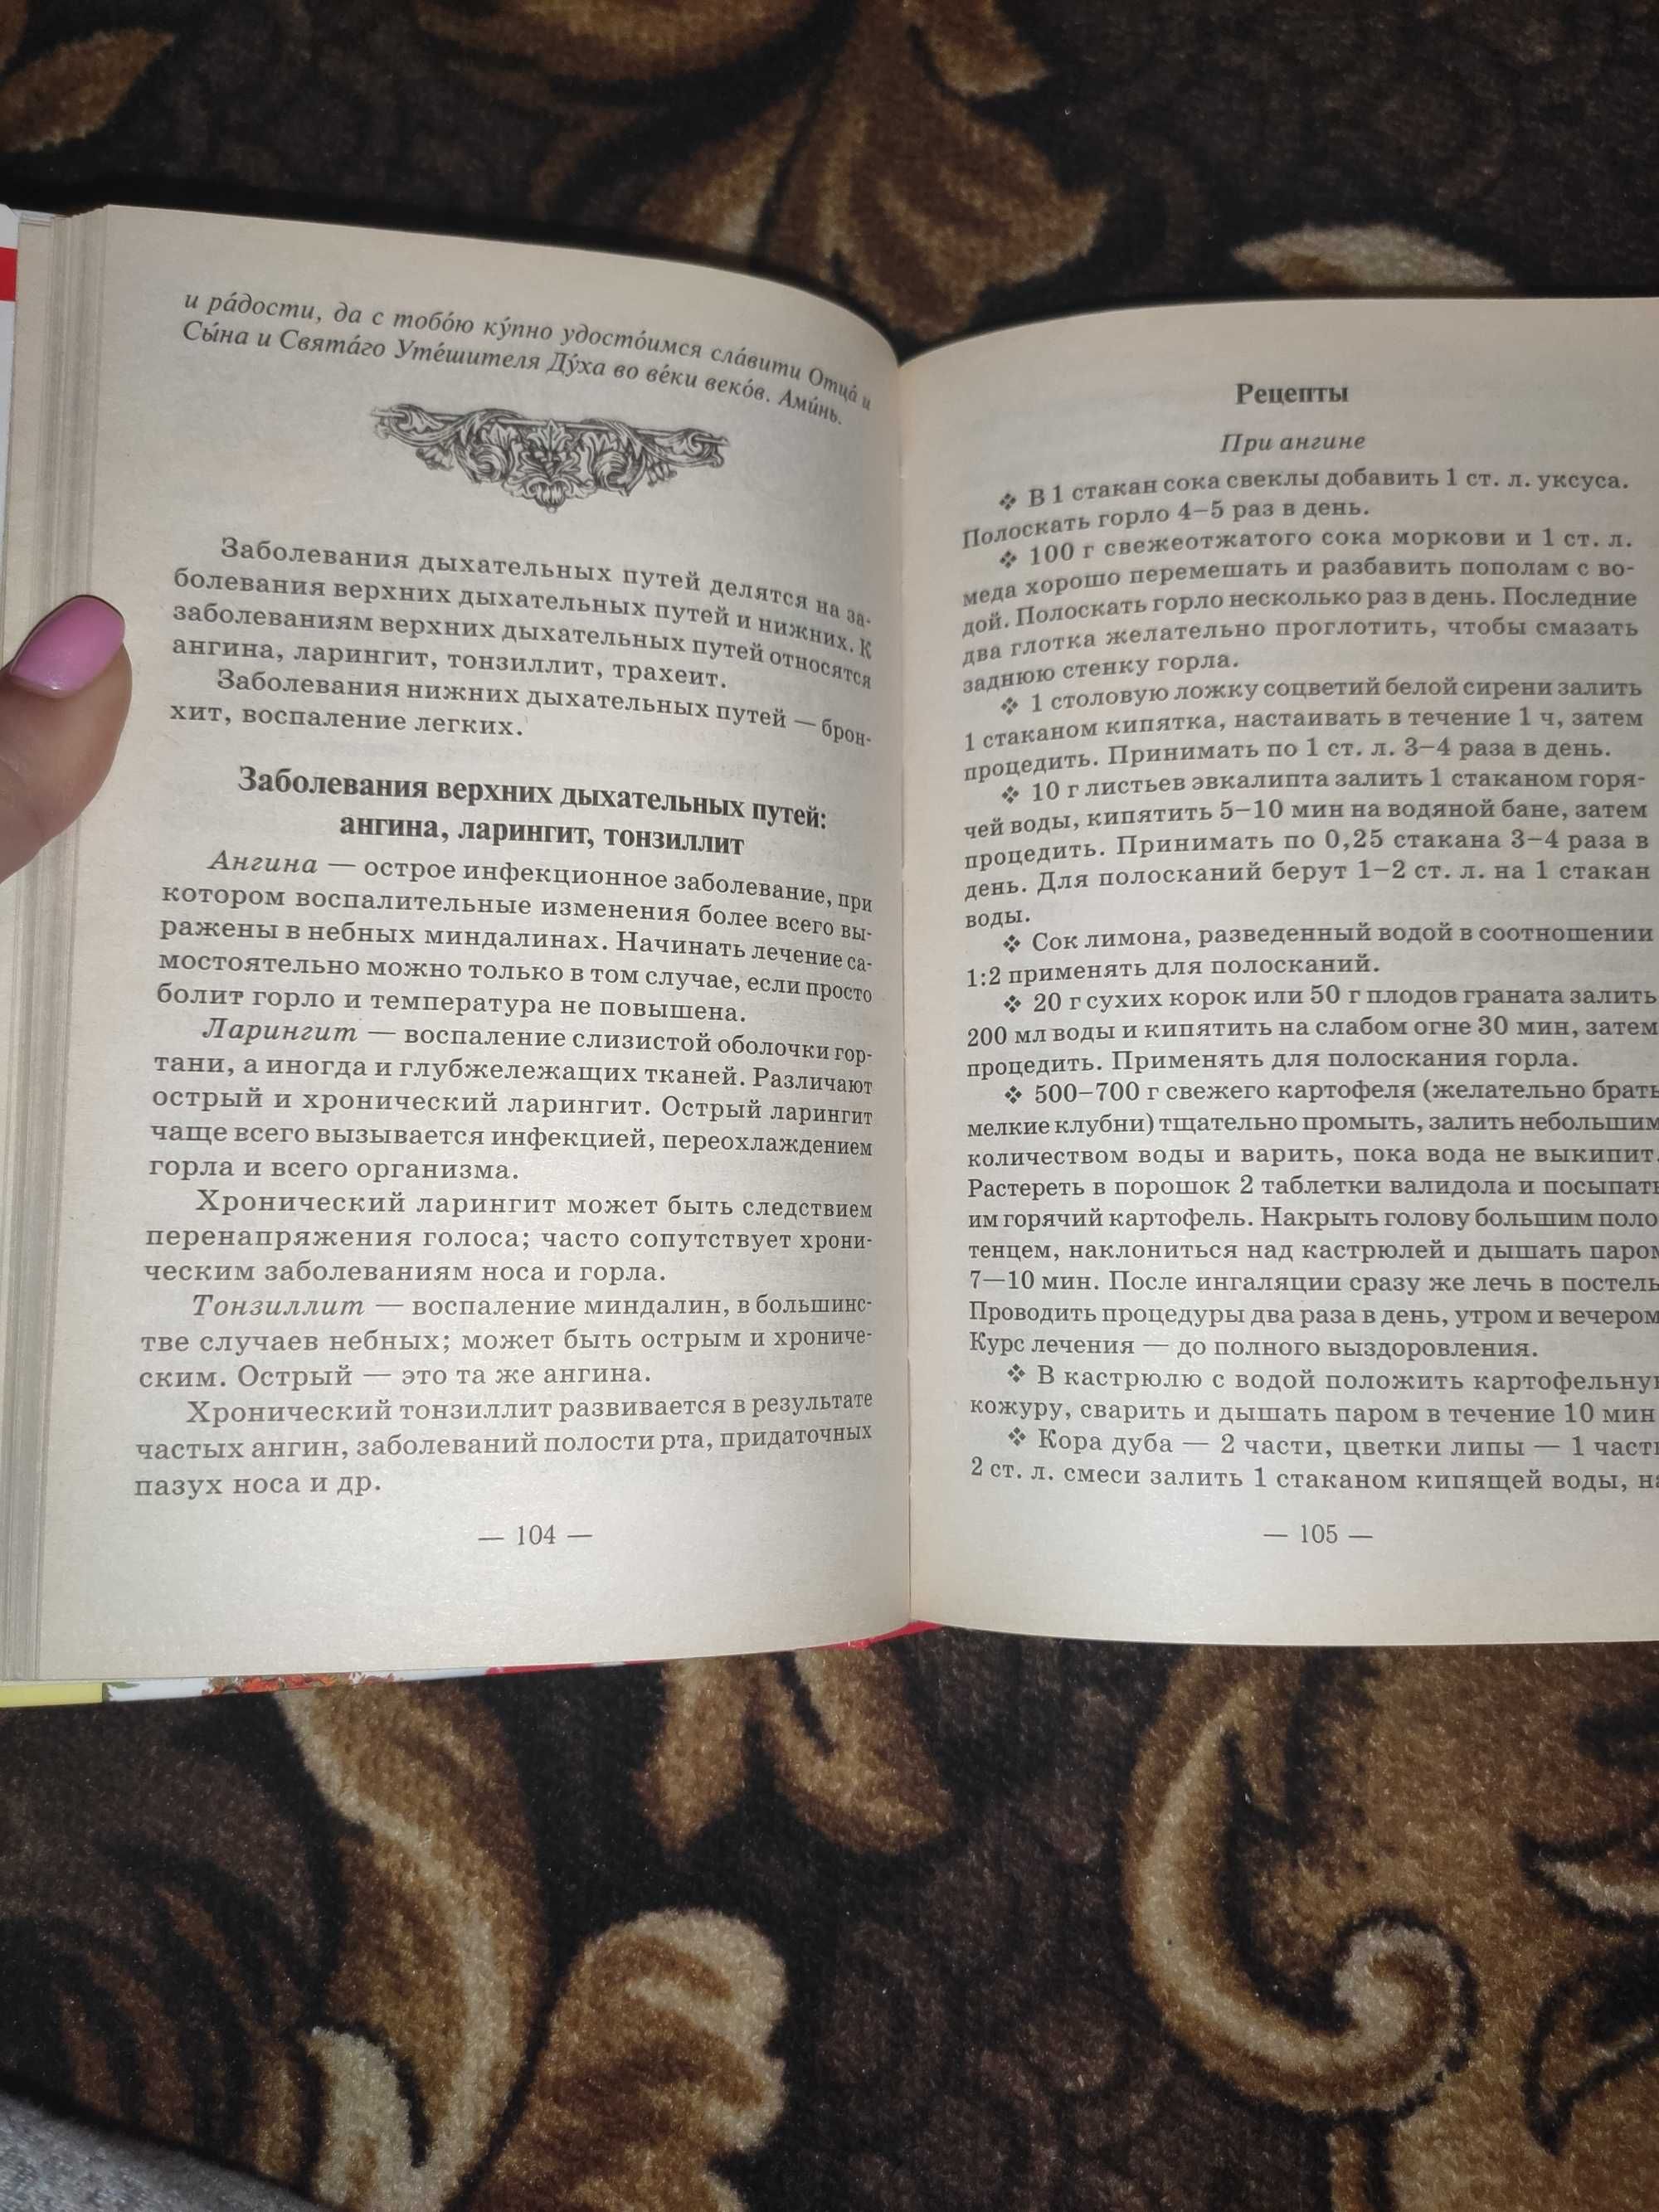 Книга "Православный лечебник. Рецепты проверенные временем".